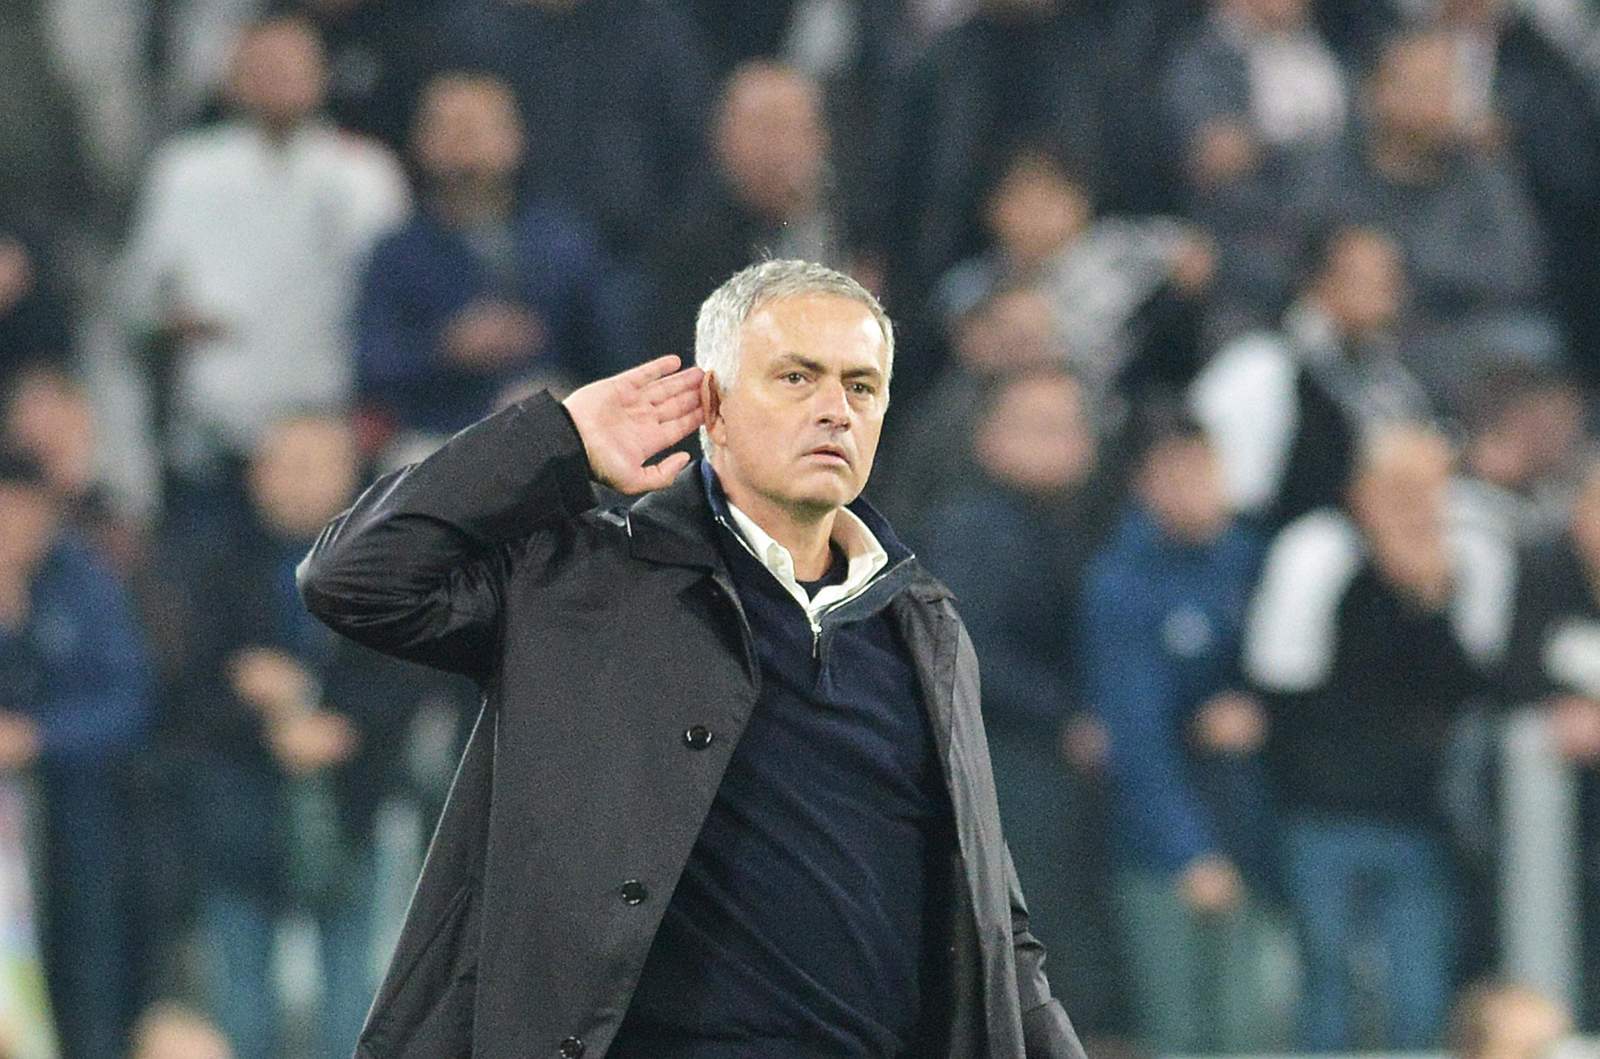 José Mourinho, técnico del Manchester United, reta a los hinchas de la Juventus al final de un partido de la Champions League.